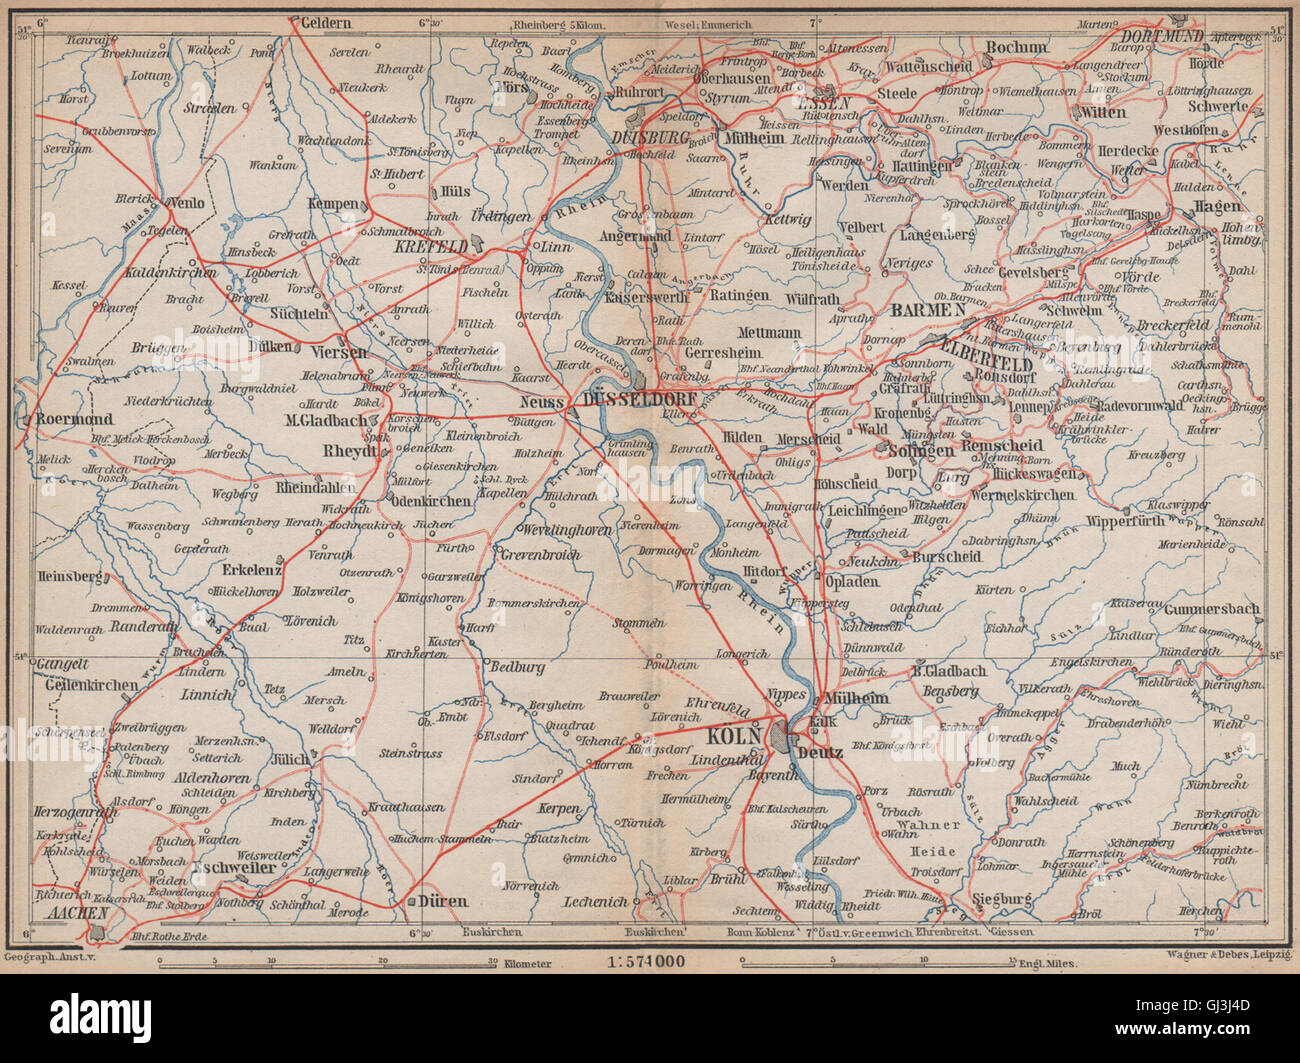 Metropolregion Rhine/Rhein-Ruhr Eisenbahnen Köln Dusseldorf Duisburg, 1896 map Stock Photo